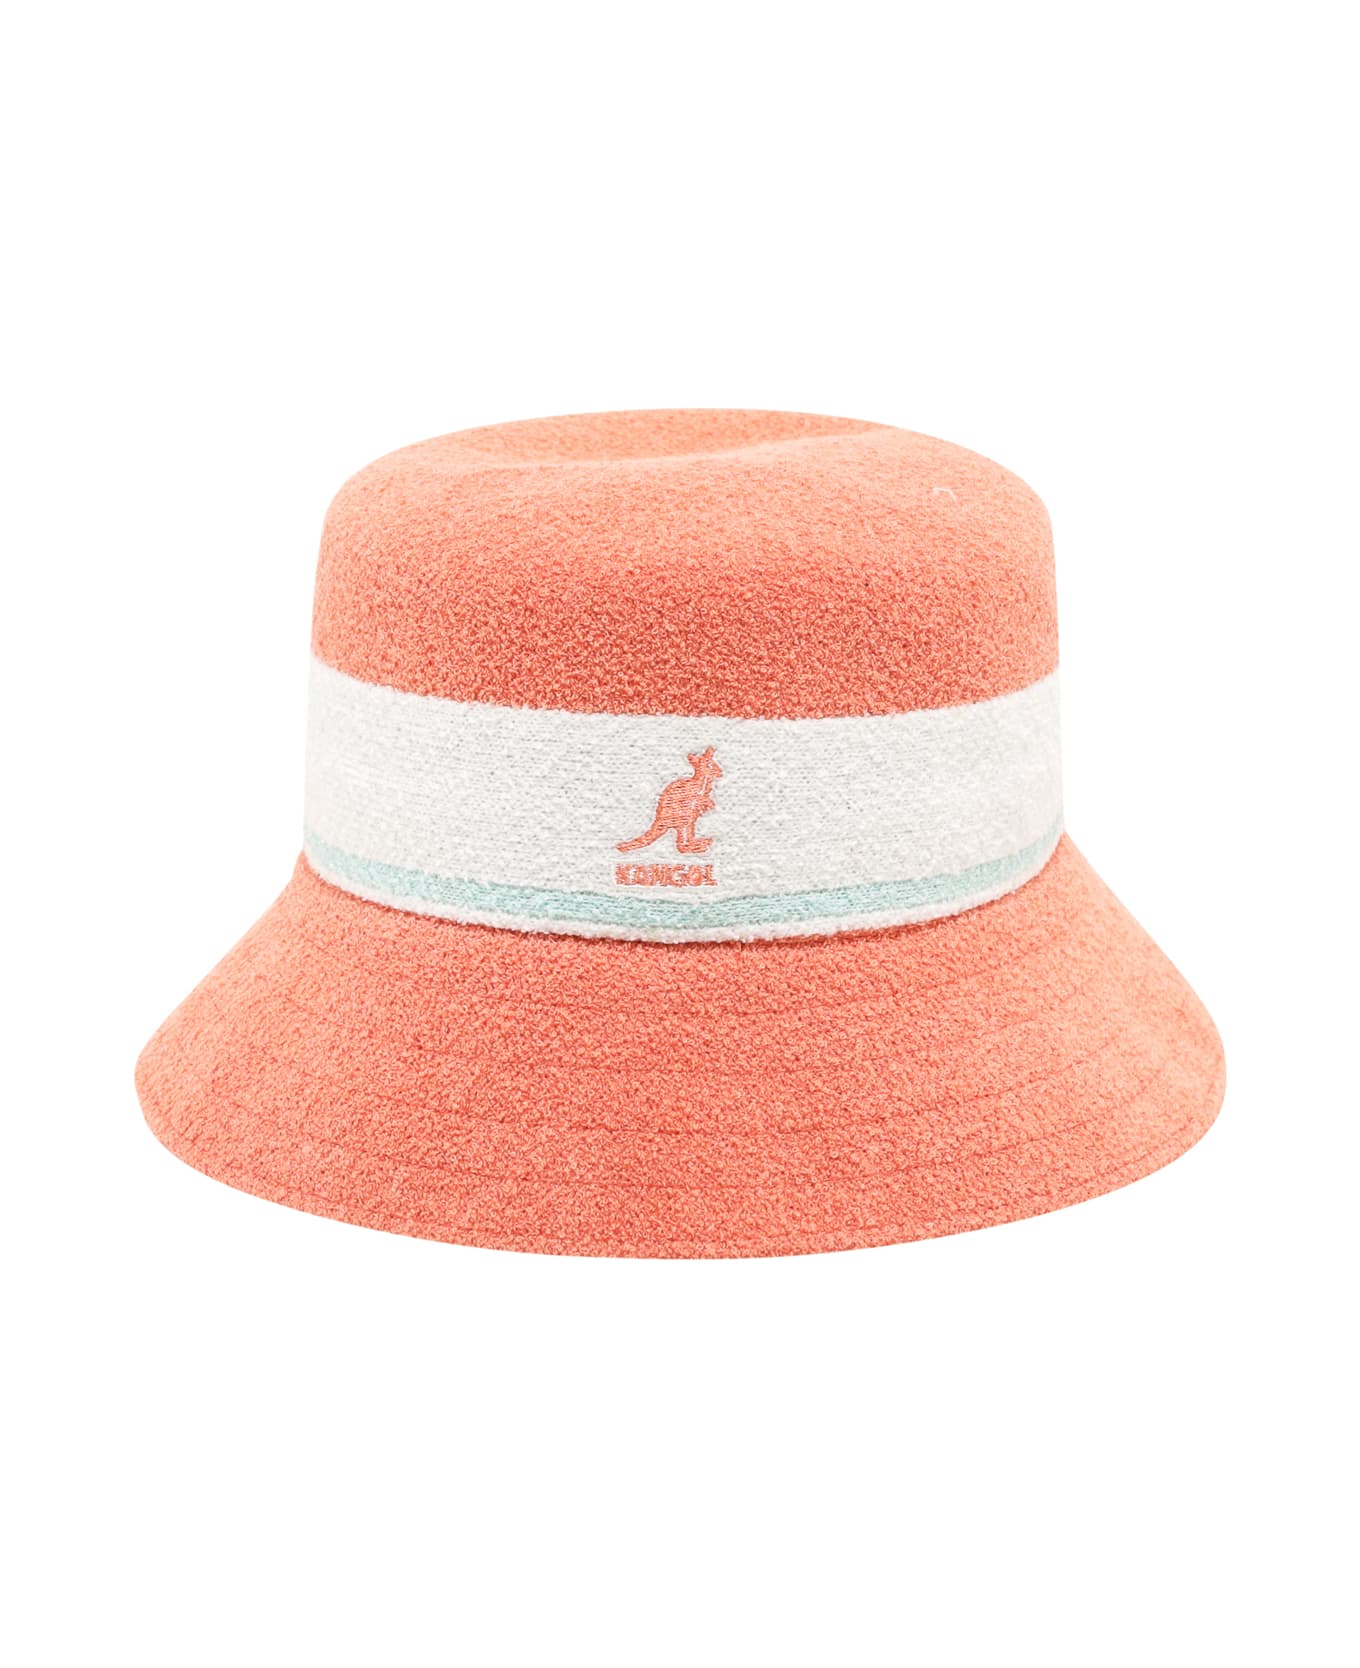 Kangol Hat - Pink 帽子